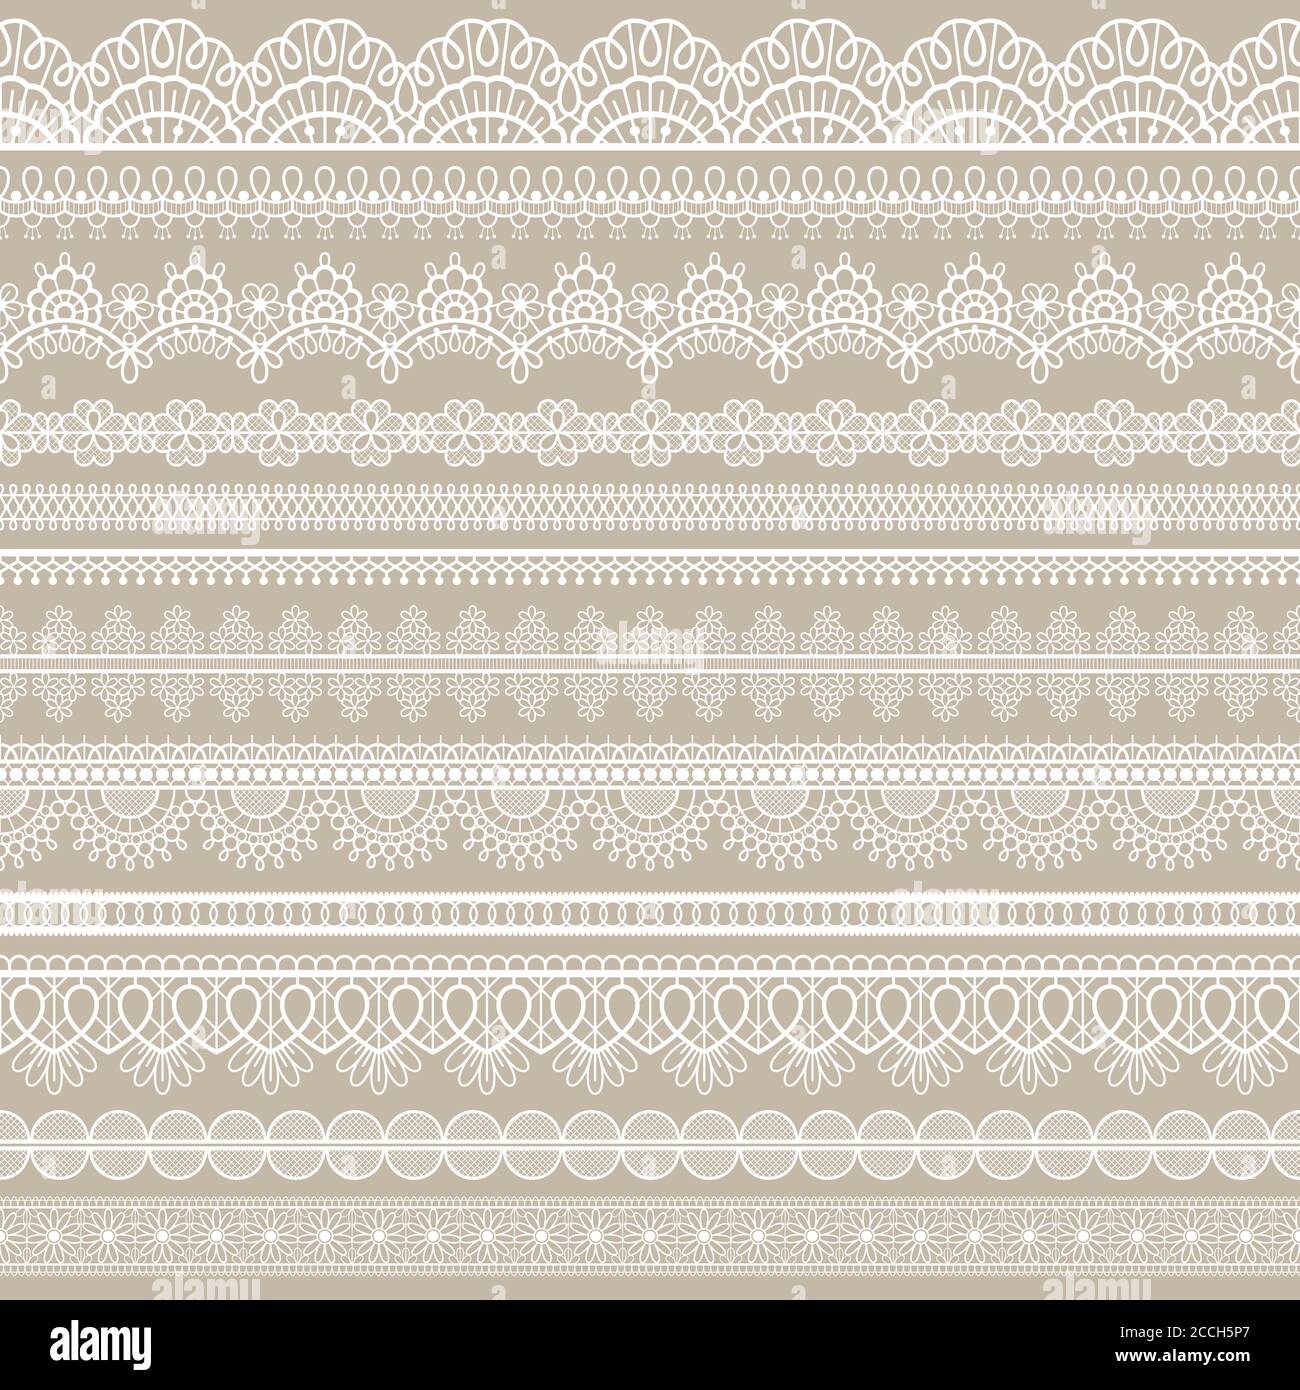 Nahtloser Spitzenrand. Weiße Baumwoll-Spitzenstreifen, bestickte dekorative verzierte Ösen-Muster, horizontale Textilstreifen handgefertigten Vektor-Set Stock Vektor